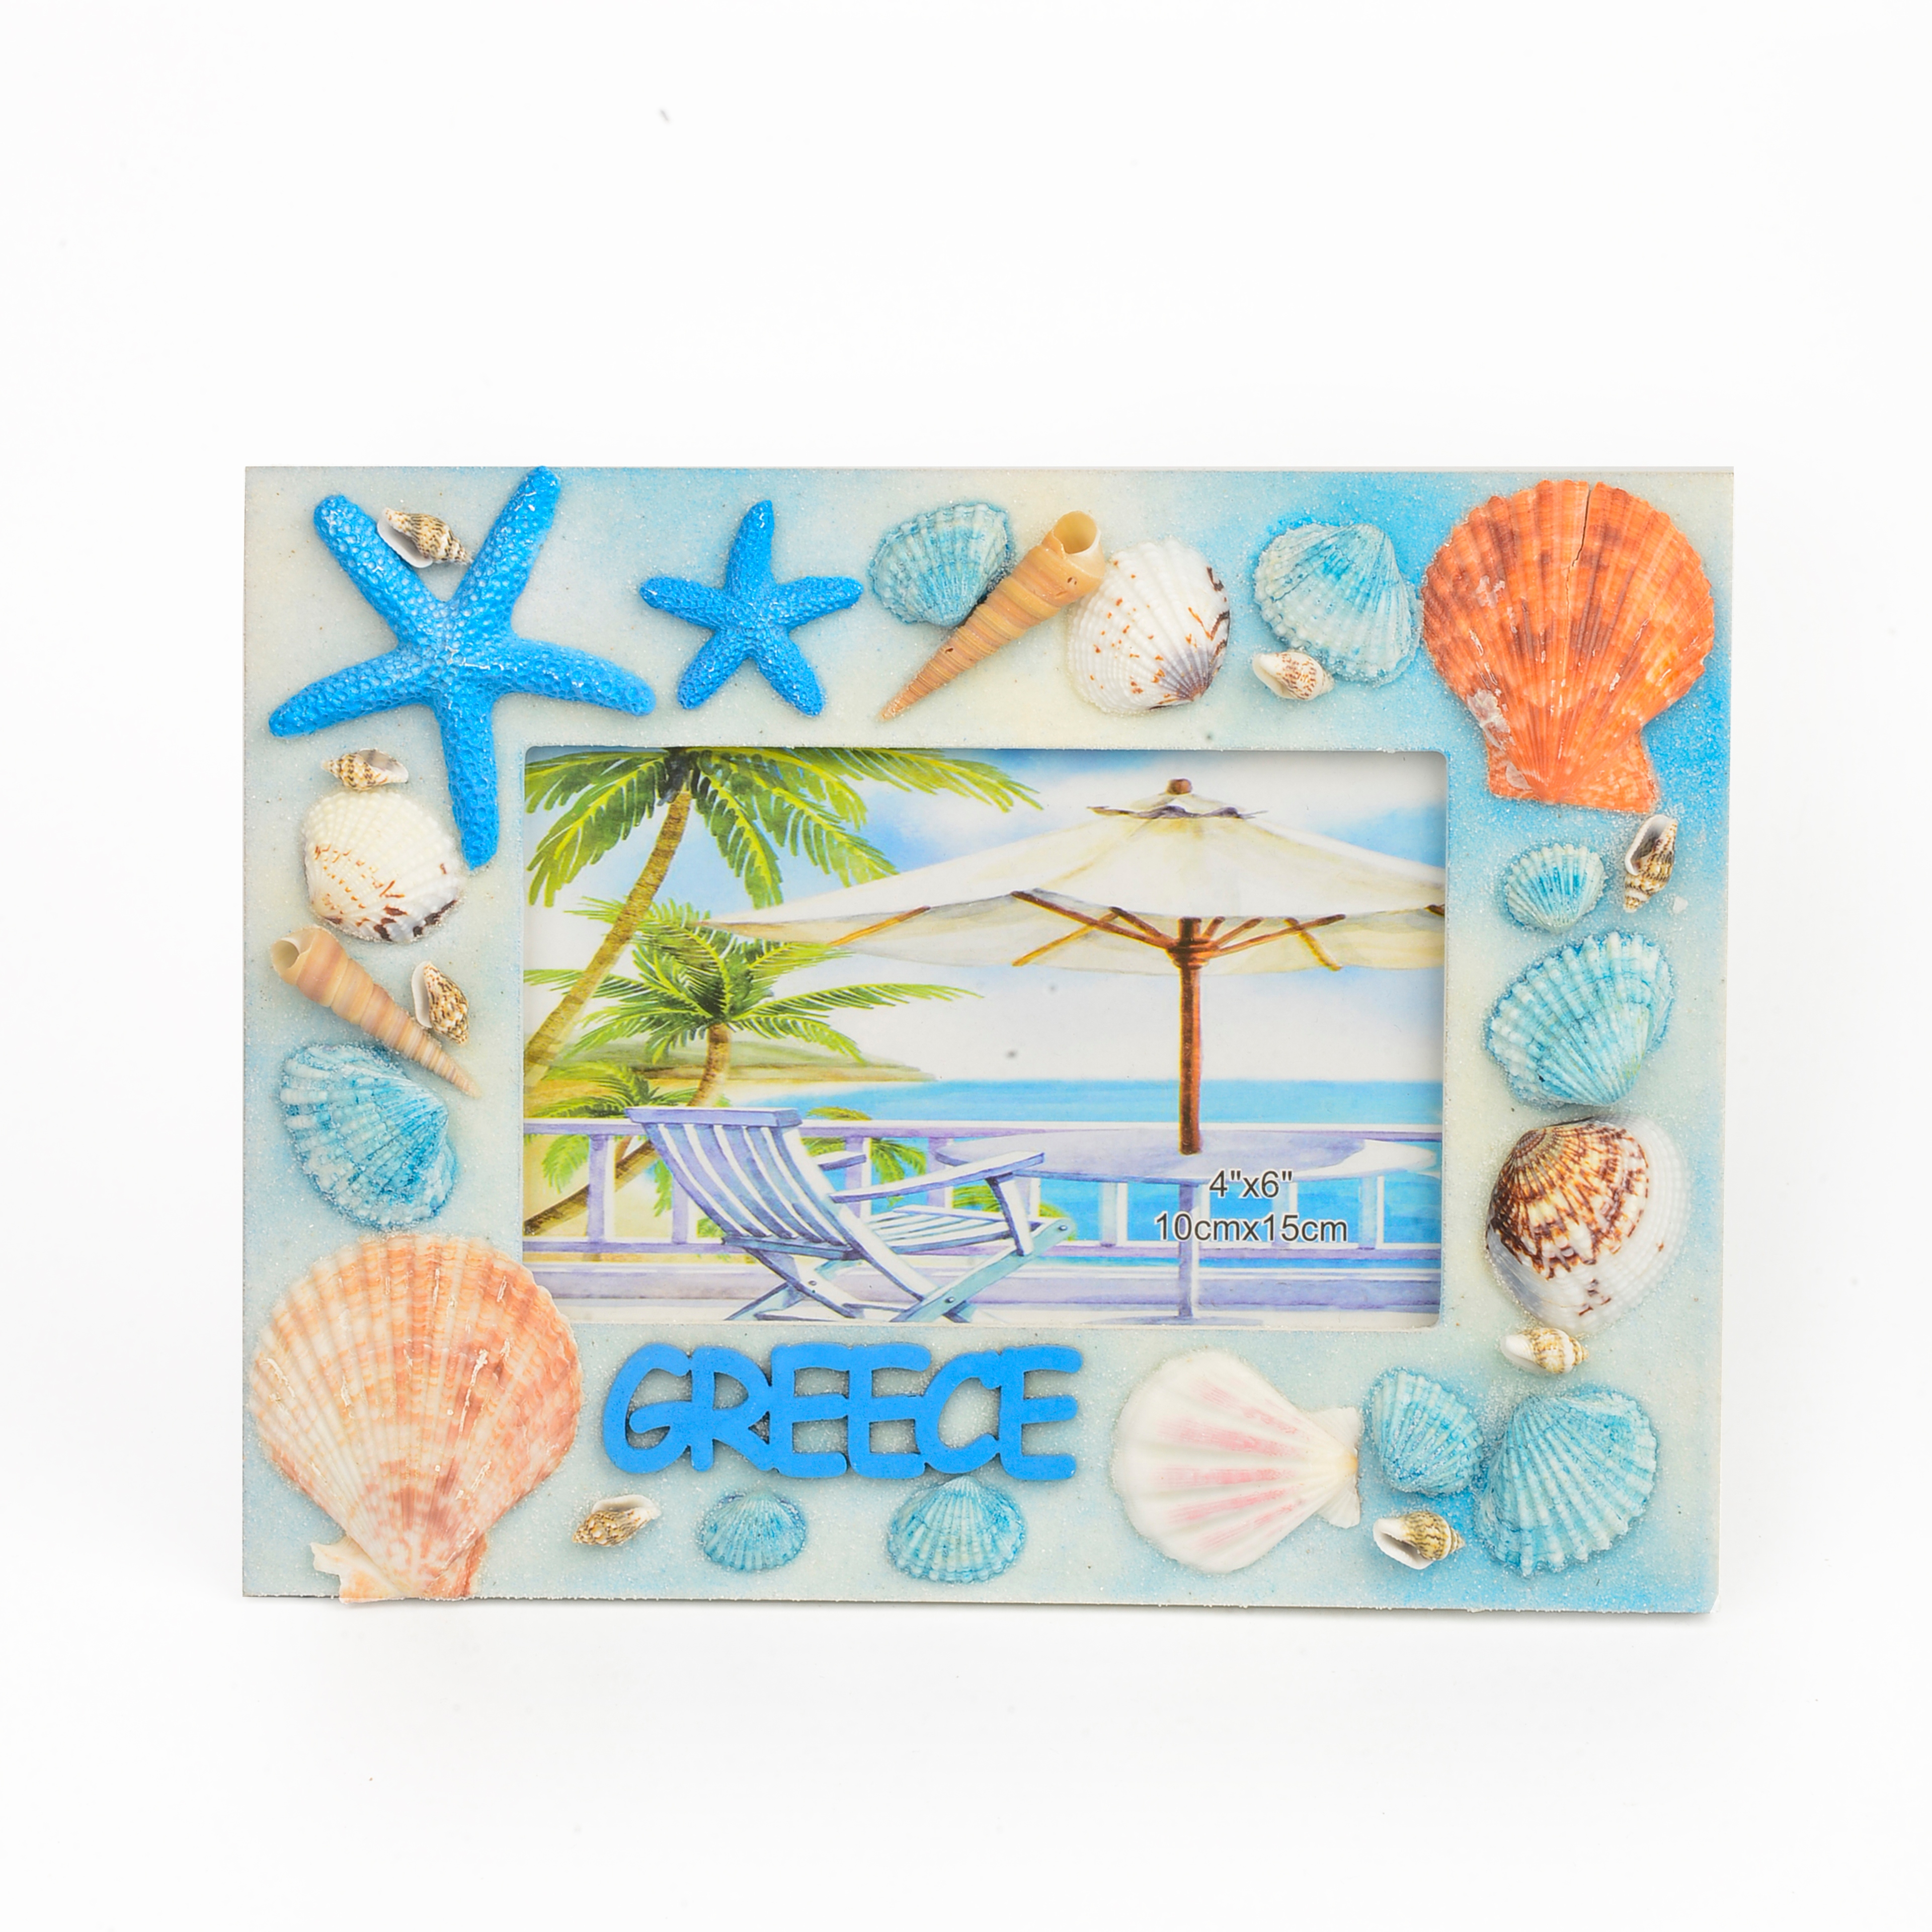 丽飞海洋系列旅游创意贝壳海螺珊瑚工艺相框0002详情图5